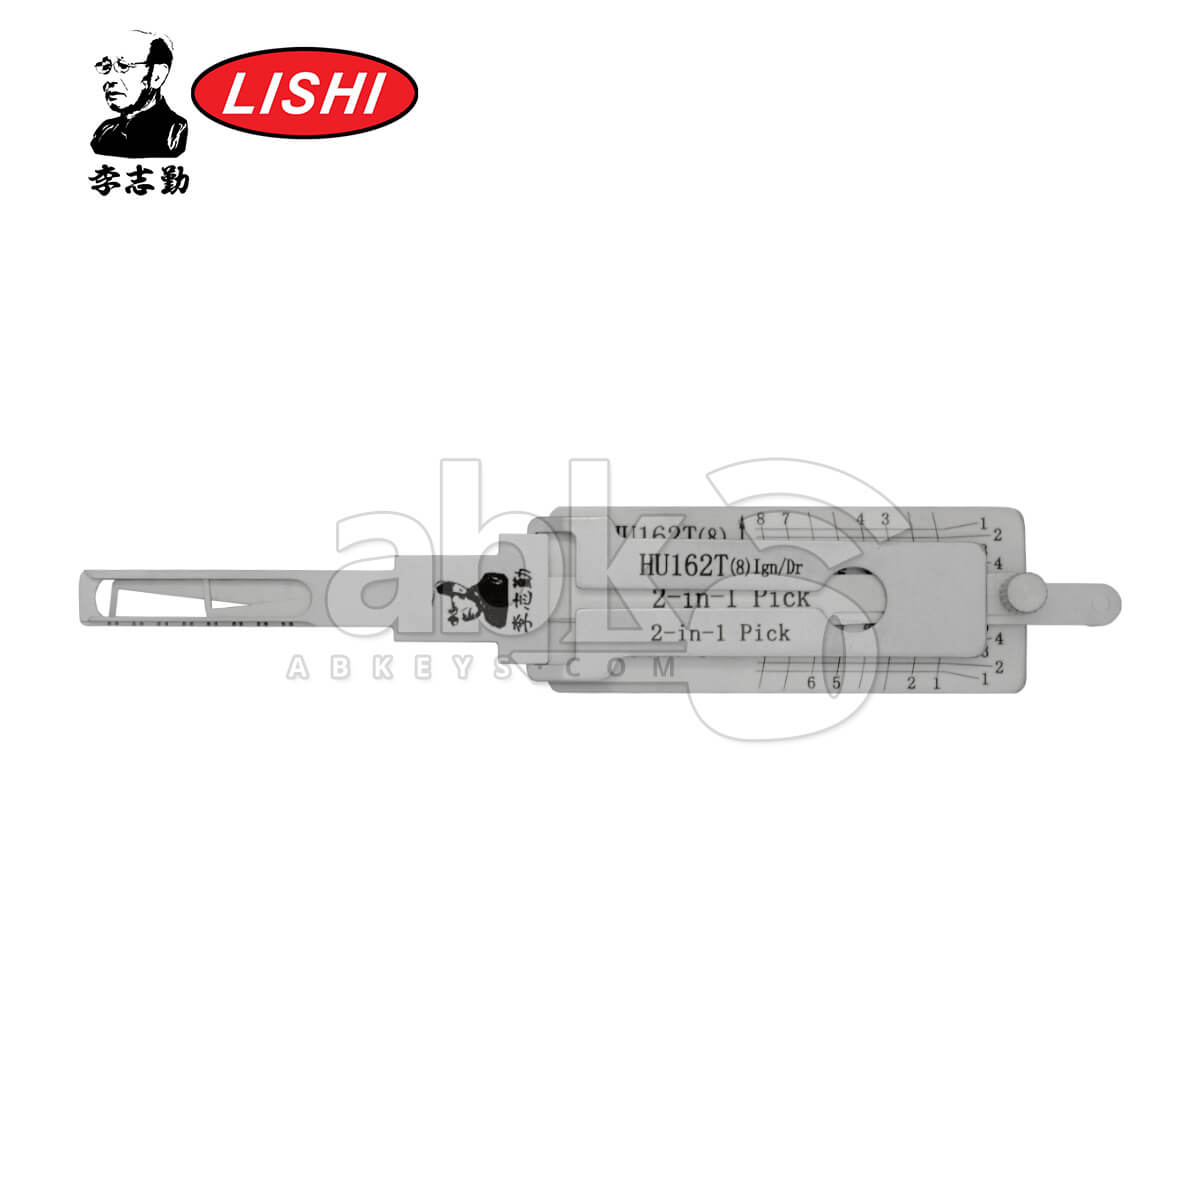 Original Lishi HU162 8Cut 3-in-1 Pick & Decoder for VW 2015+ Tool - ABK-5297 ABKEYS.COM